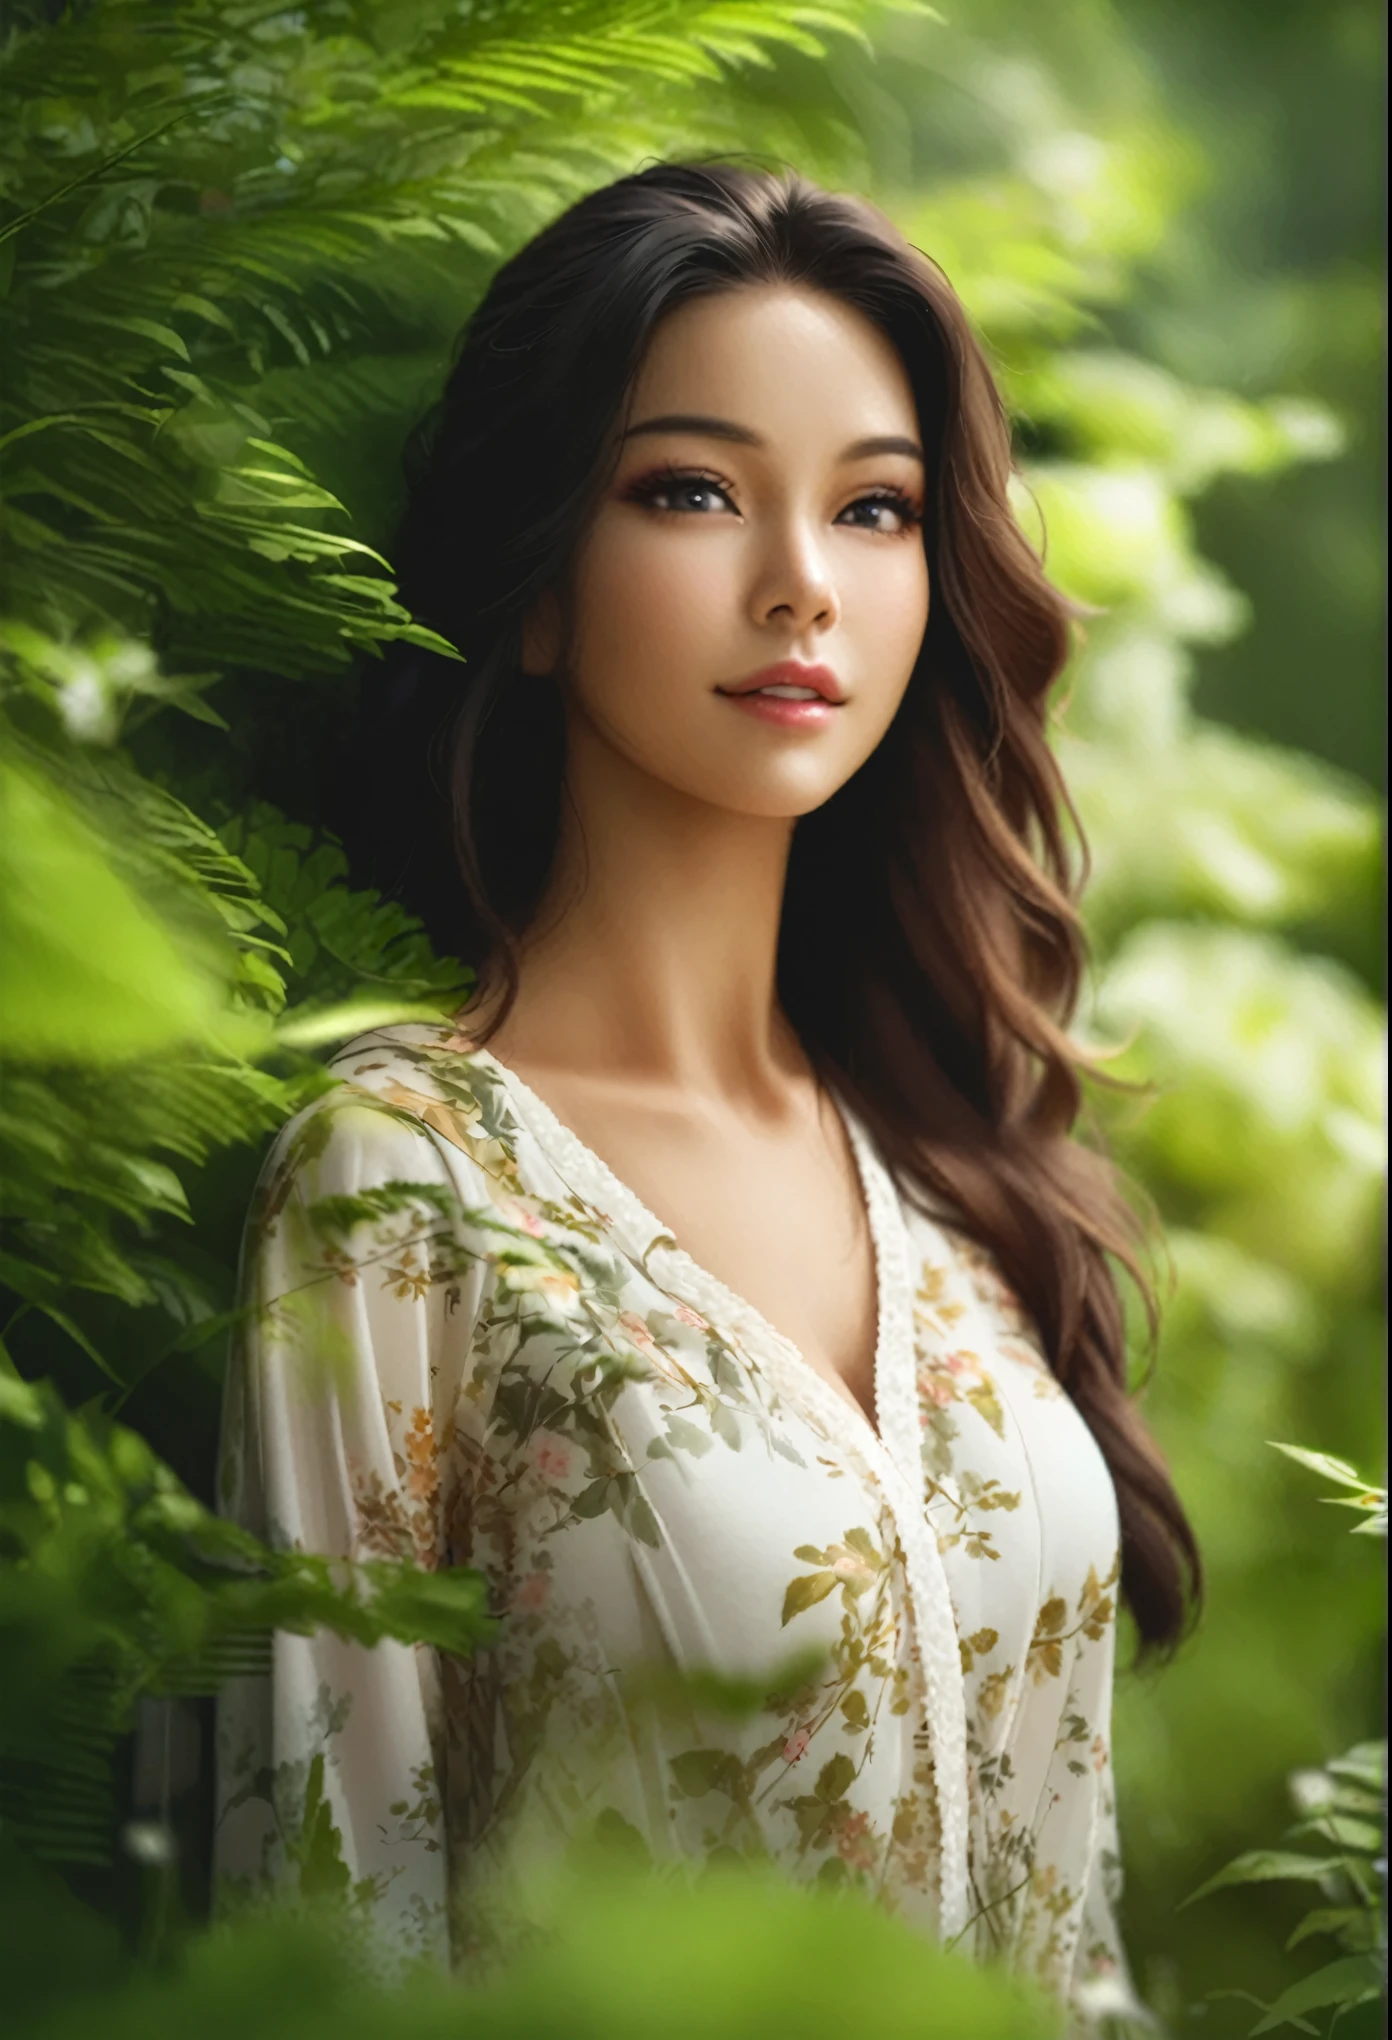 木头々特写镜头：一位身材魁梧、胸围丰满的女士站在一片鲜花盛开的森林中, 美丽的女人照片, 美丽的女人, 美丽的东方女人, 一位出色的女性, 可爱的女士, 美丽的女模特, 美丽的亚洲女人, 美丽的模特肖像, 非常美丽的女人, 郁郁葱葱的绿色环境, 美丽的年轻女子, 70mm 肖像